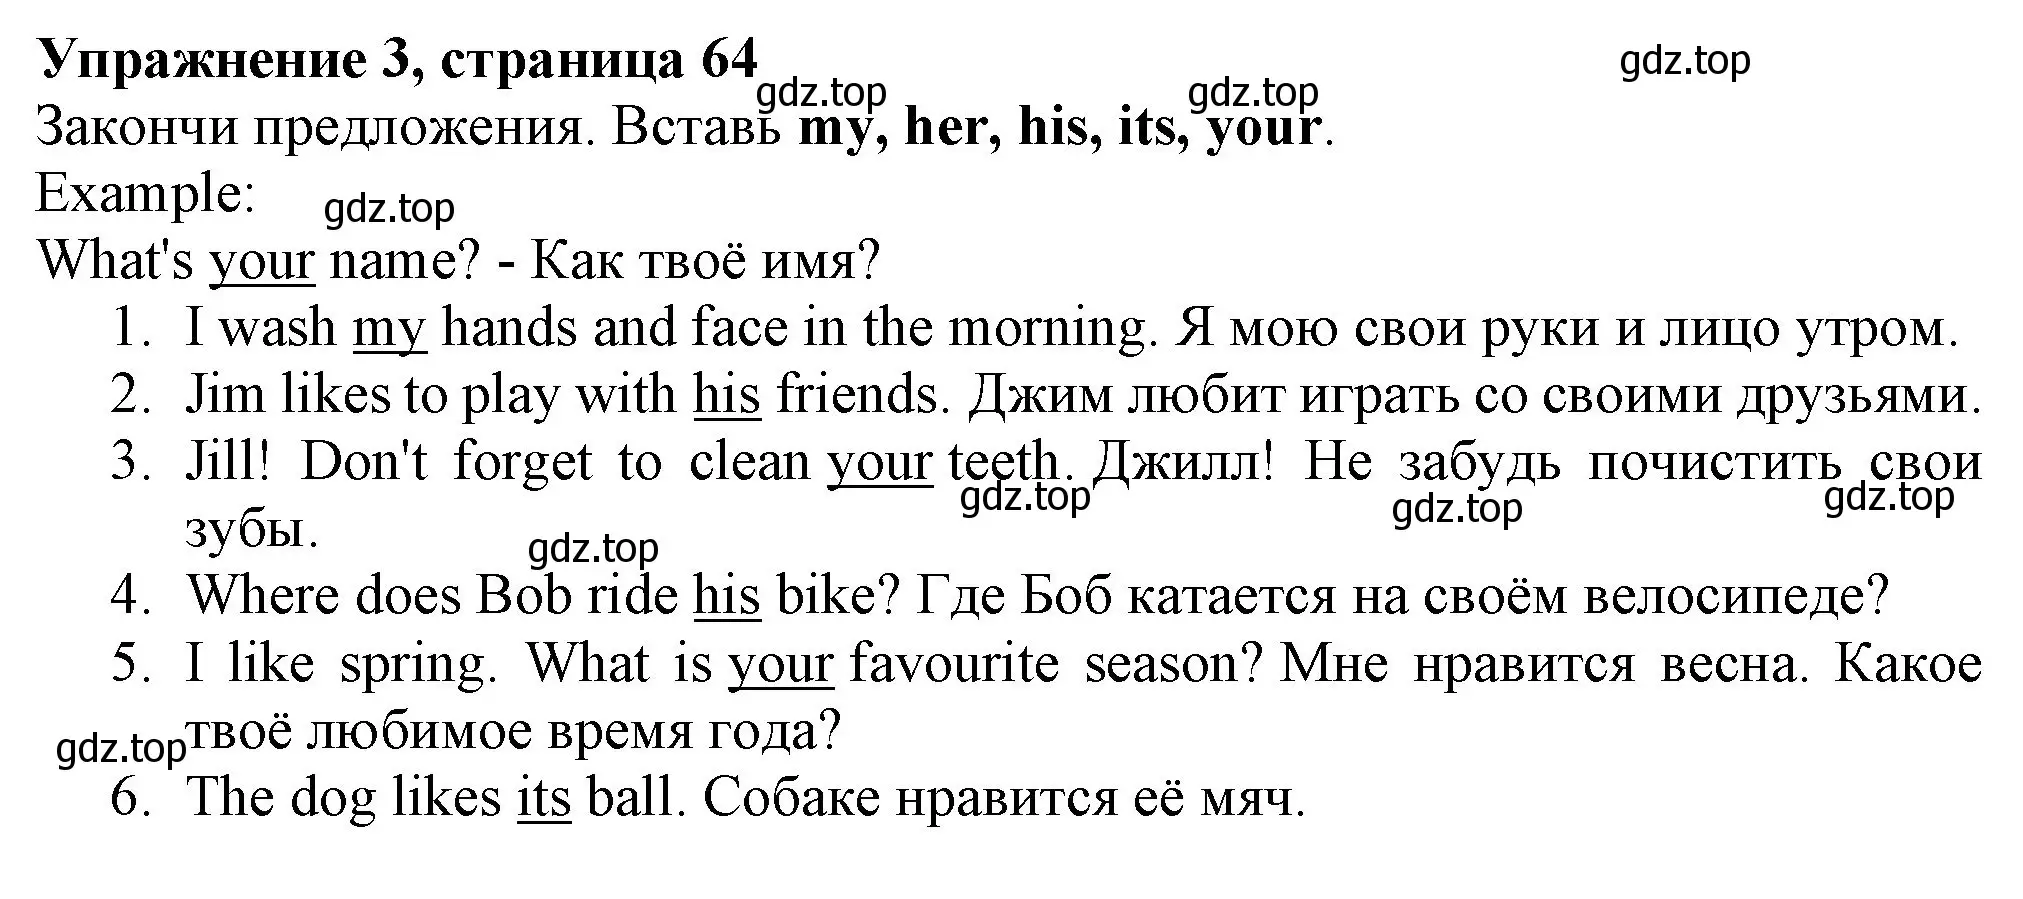 Решение номер 3 (страница 64) гдз по английскому языку 3 класс Биболетова, Денисенко, рабочая тетрадь